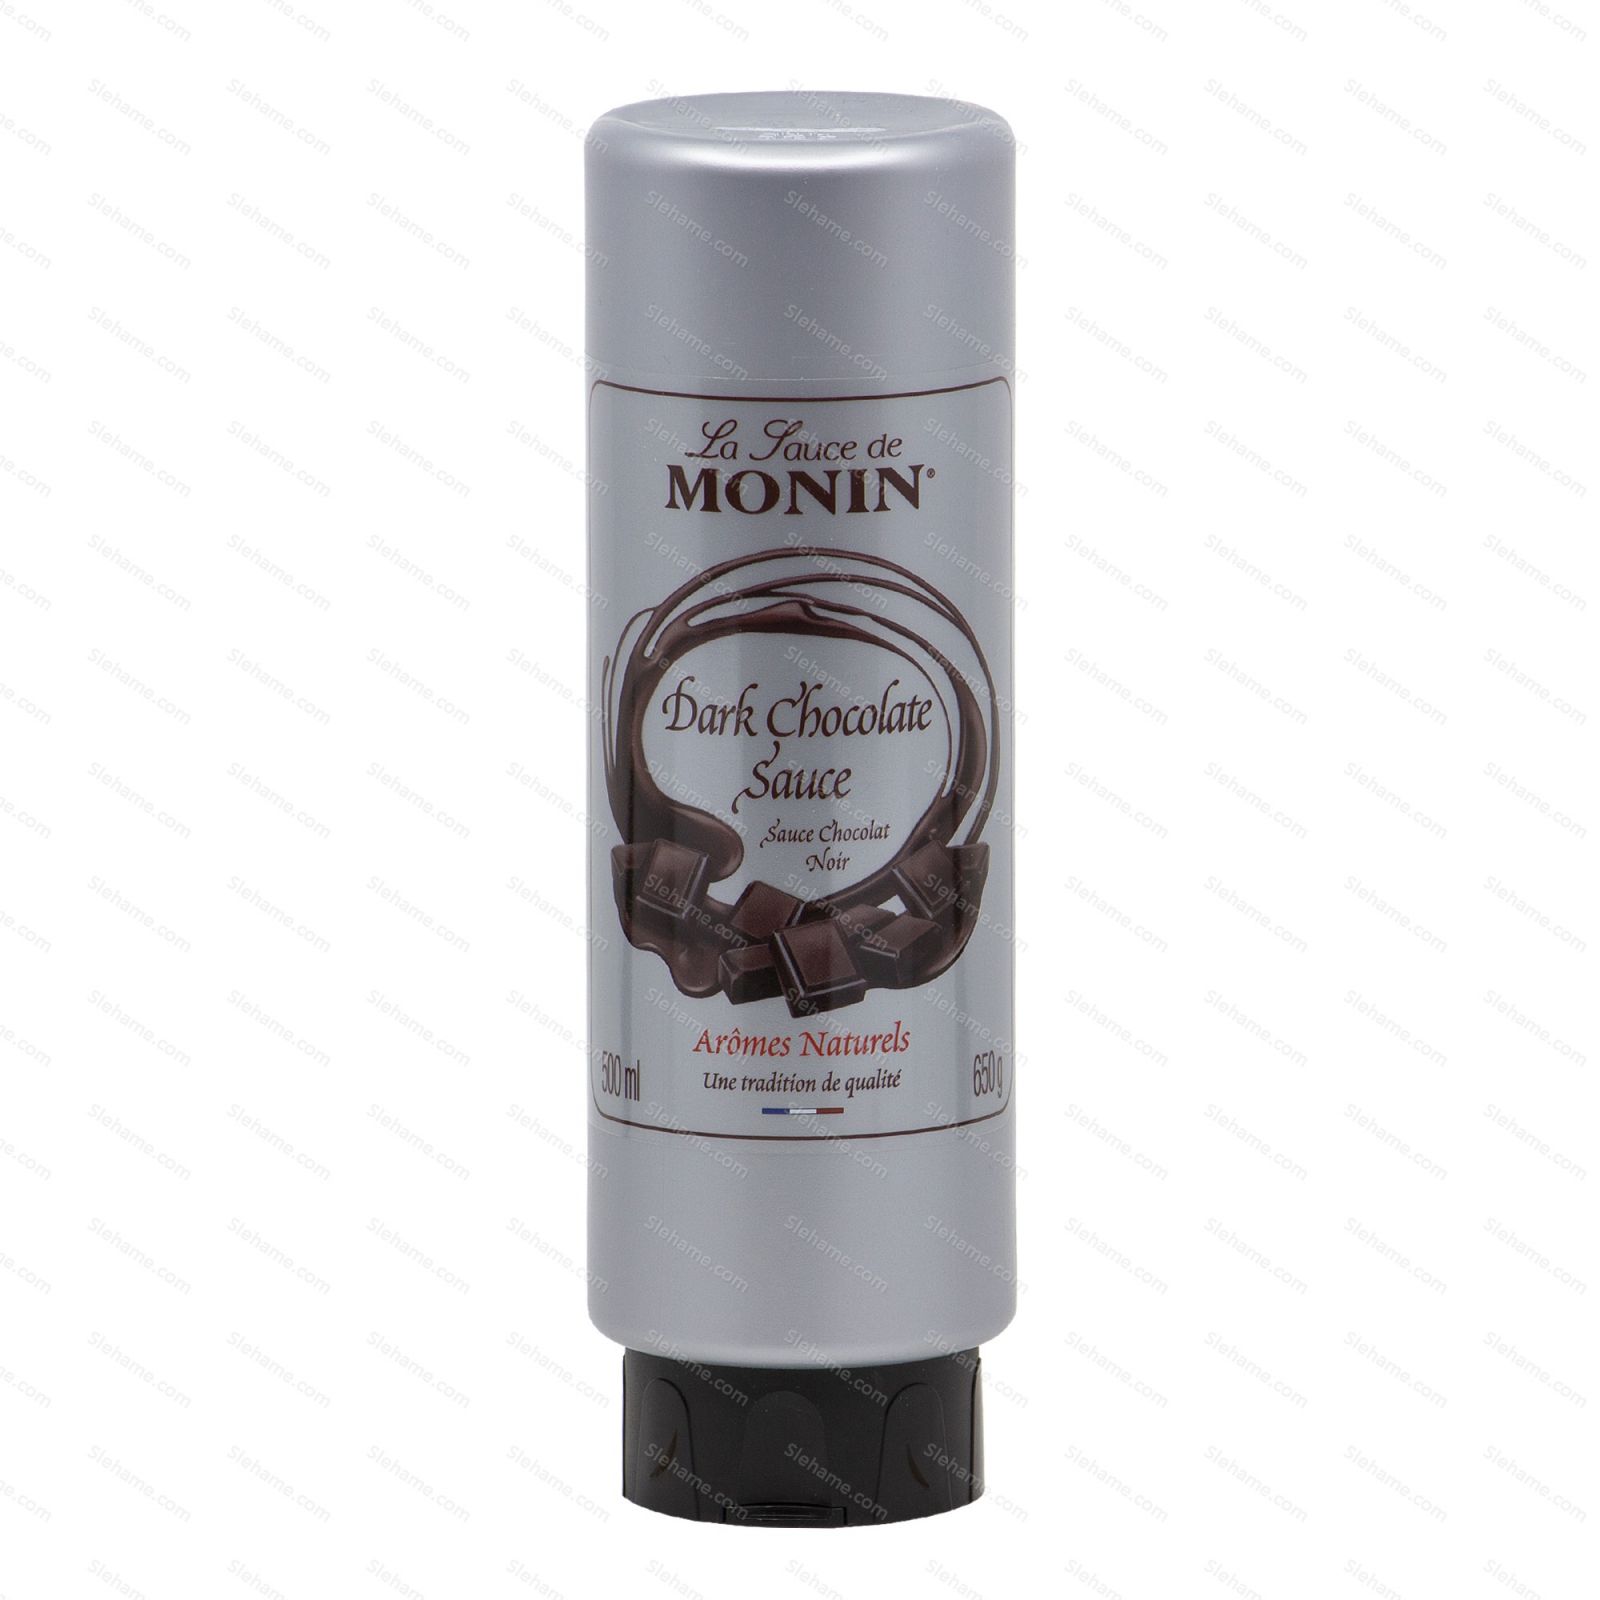 Toping Monin Dark Chocolate Sauce, 500 ml - main view